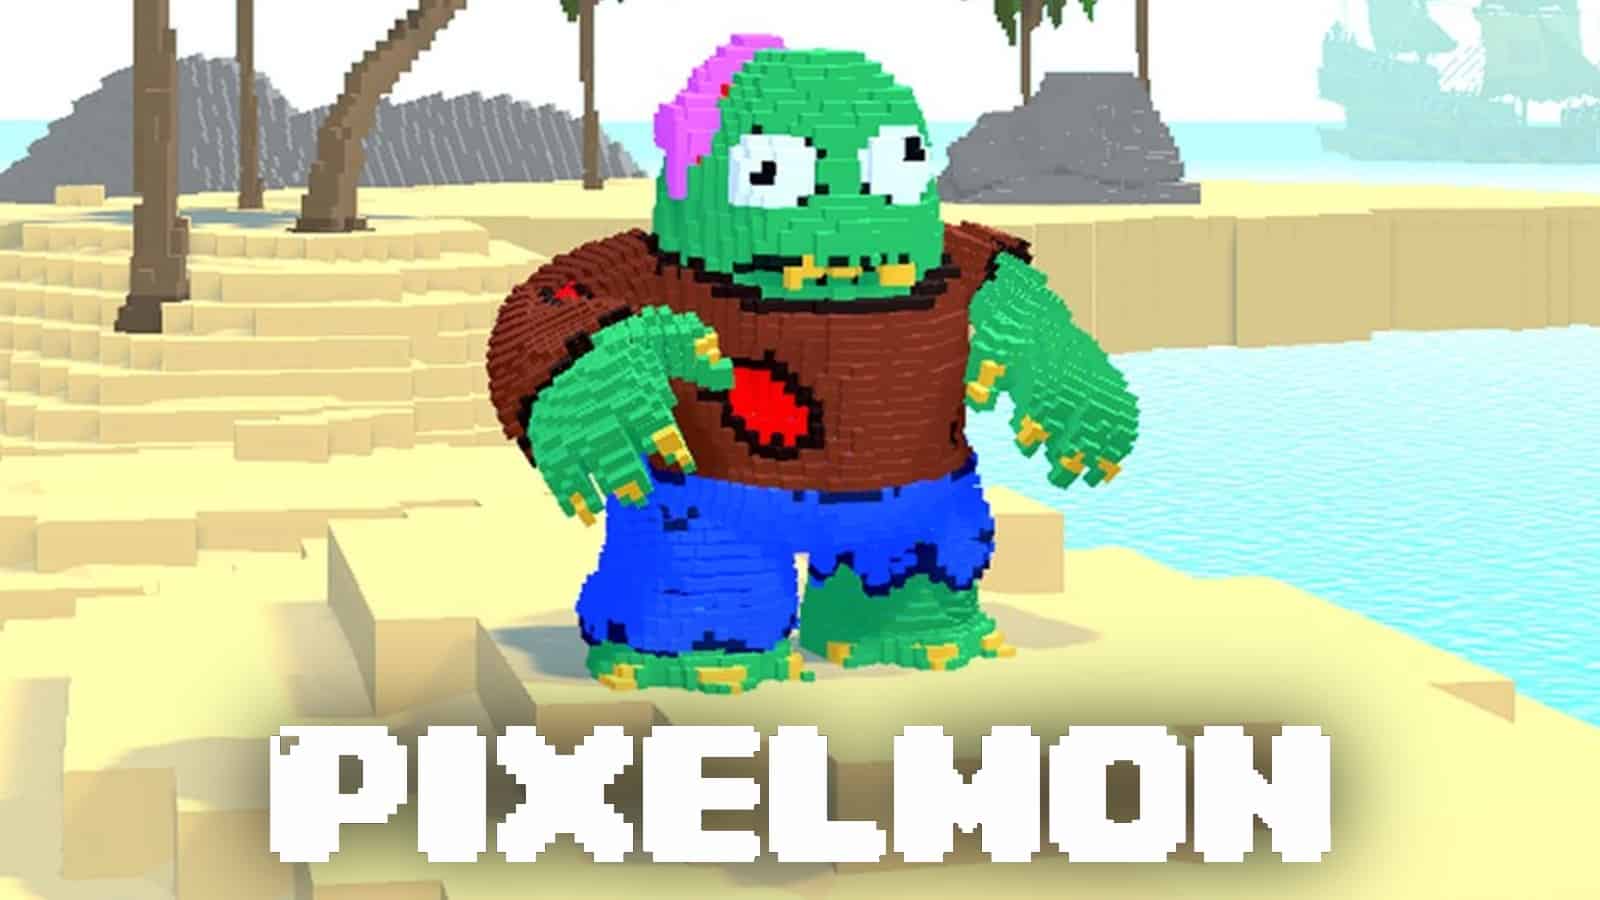 Pixelmon Kevin with Pixelmon logo